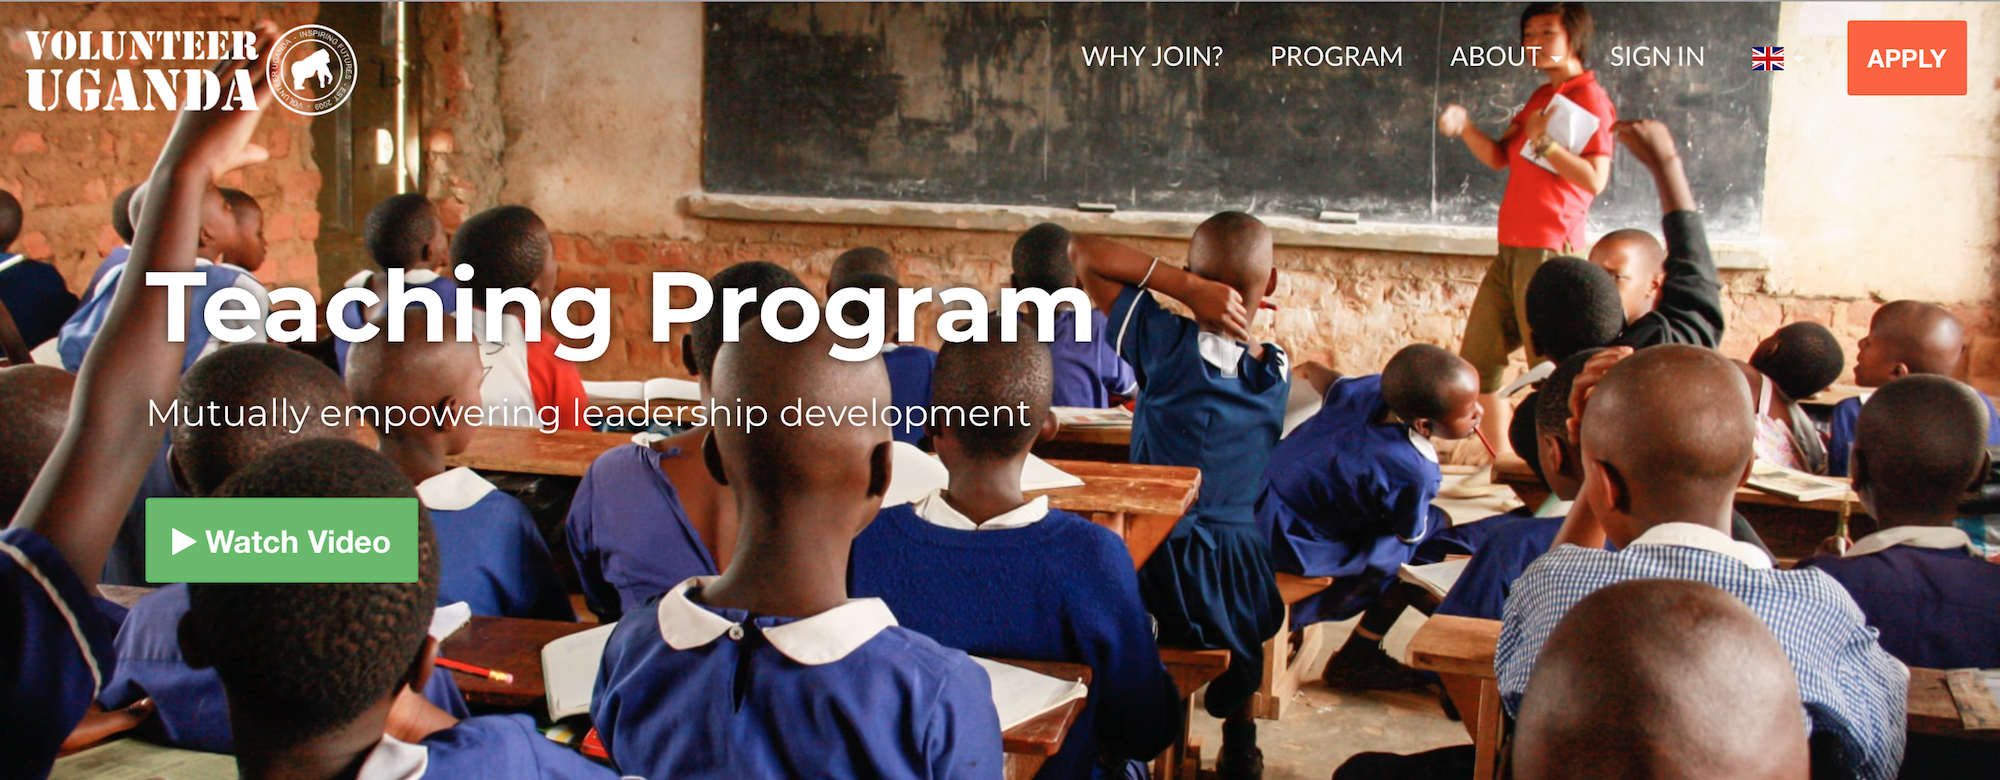 Screenshot of Volunteer Uganda website